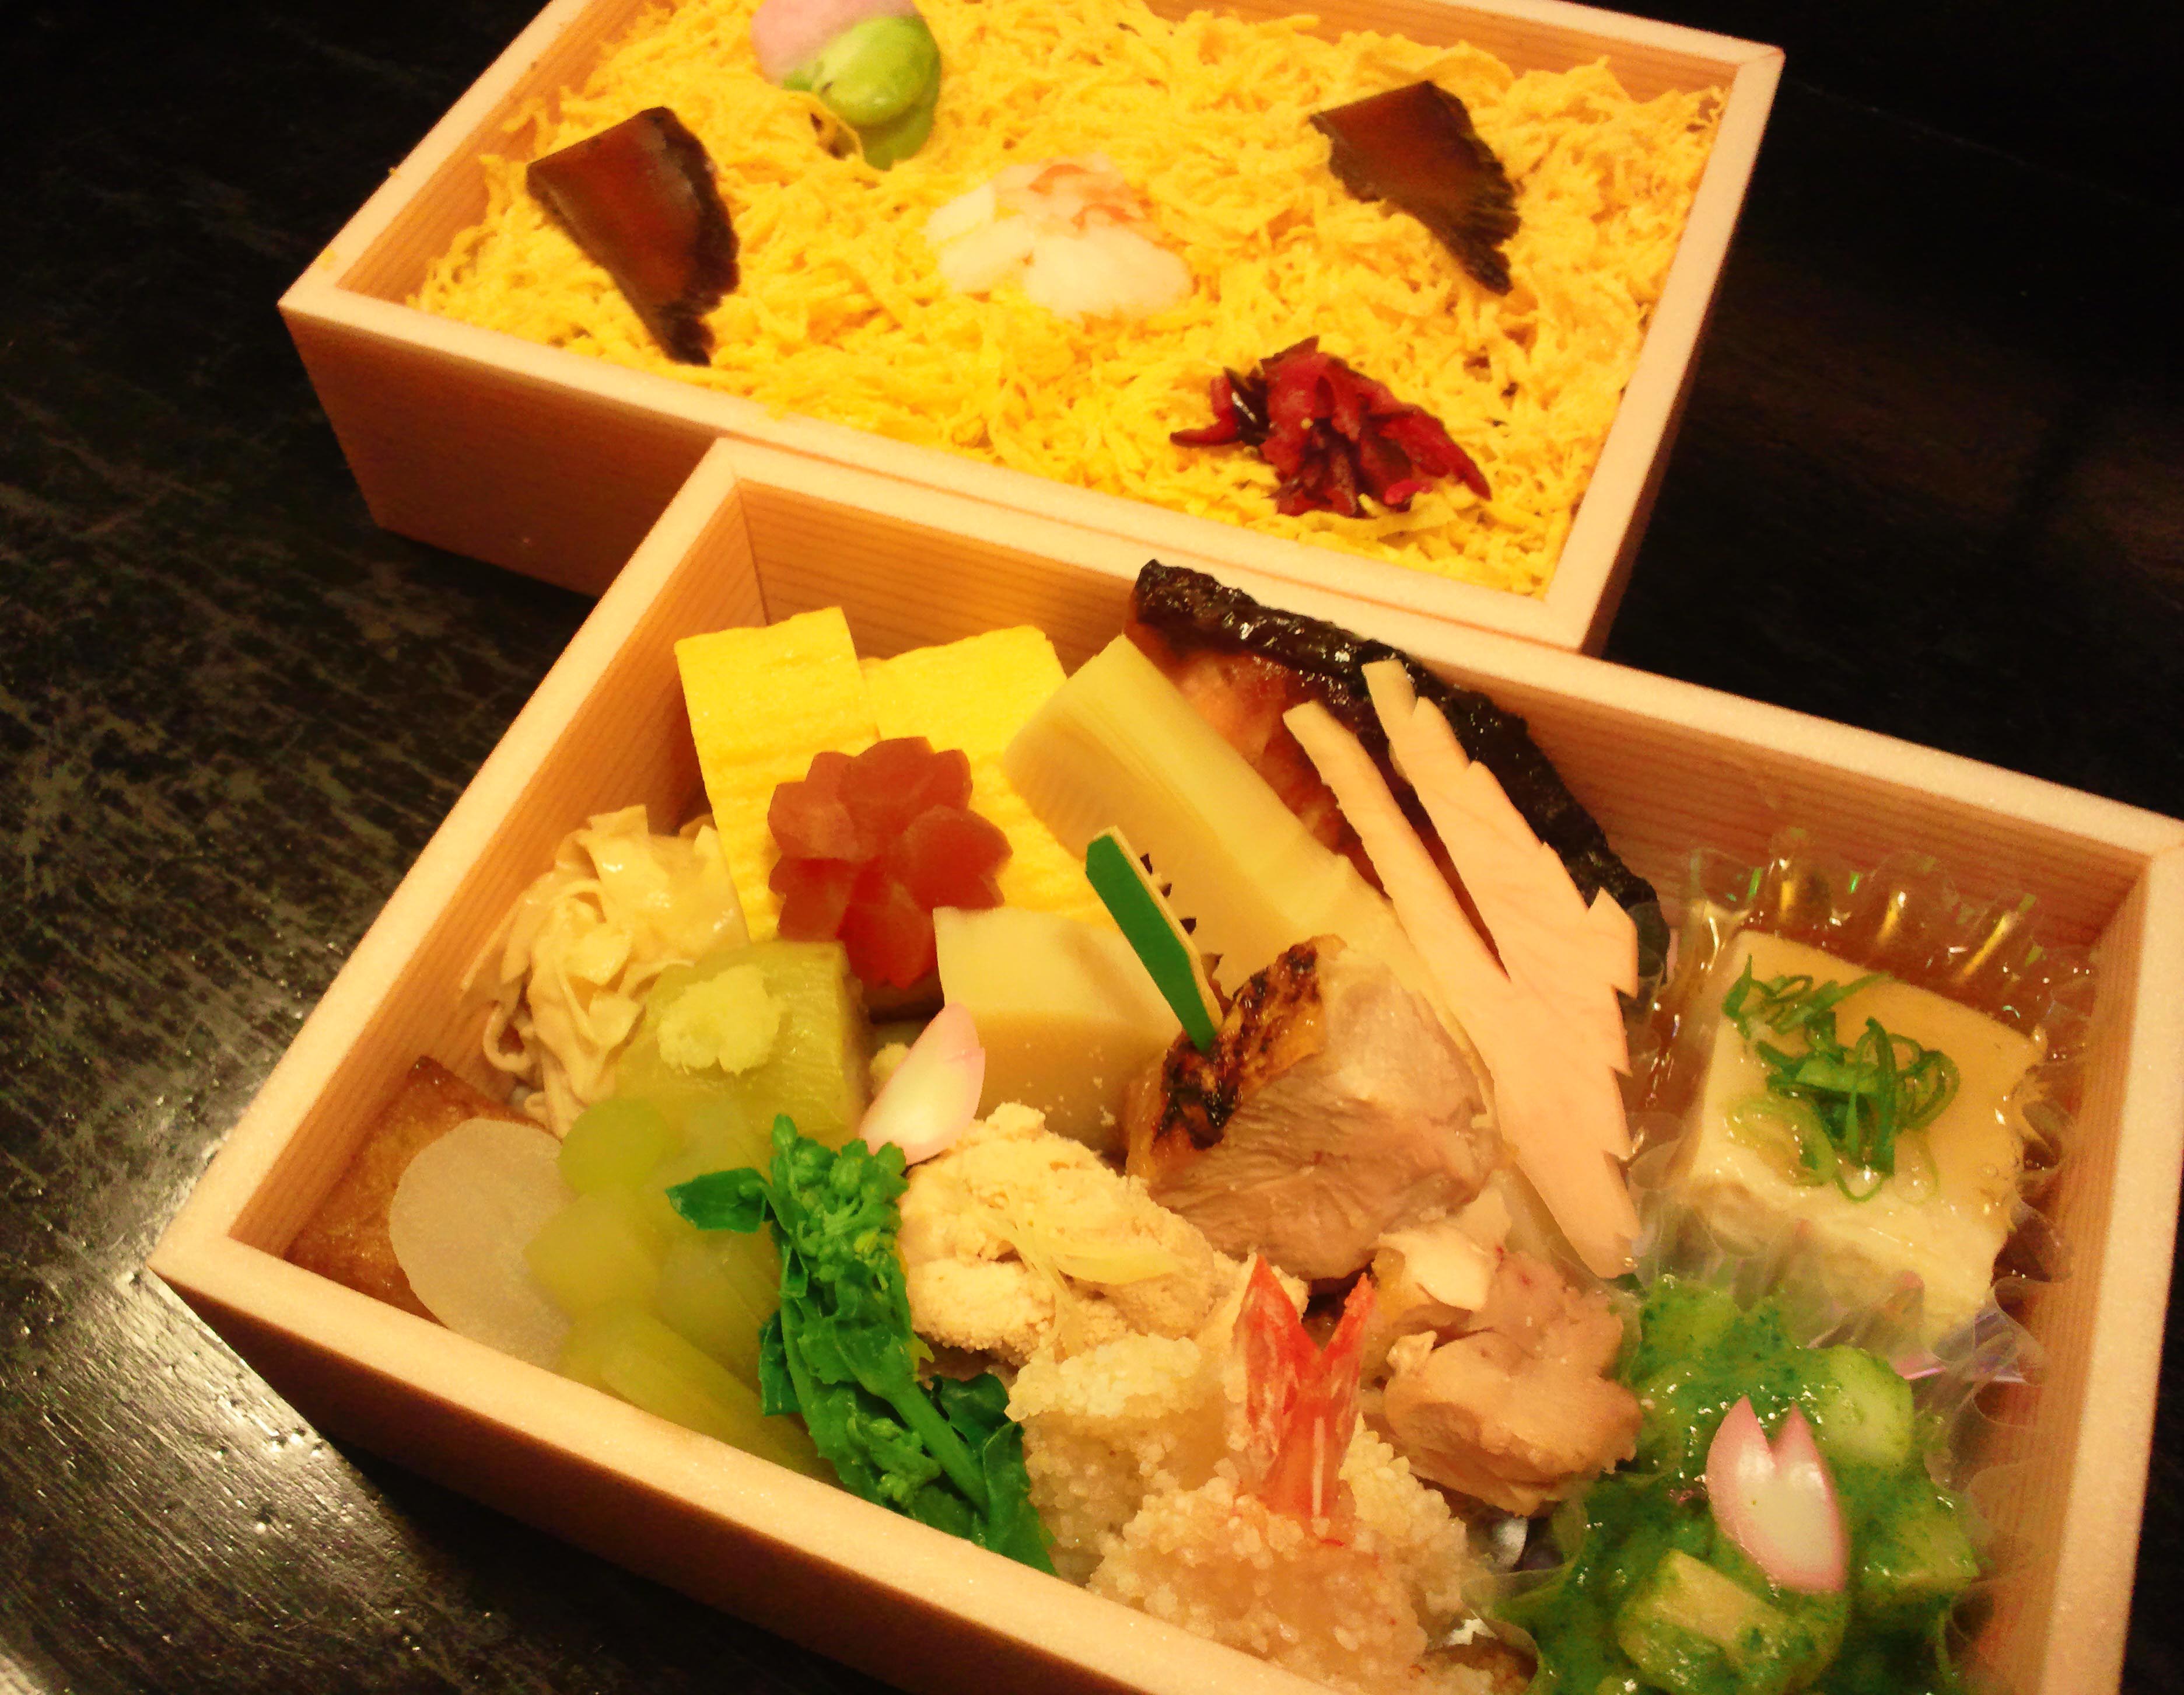 東京青山で人気のお花見・行楽弁当の予約なら和食【いと家】芝公園